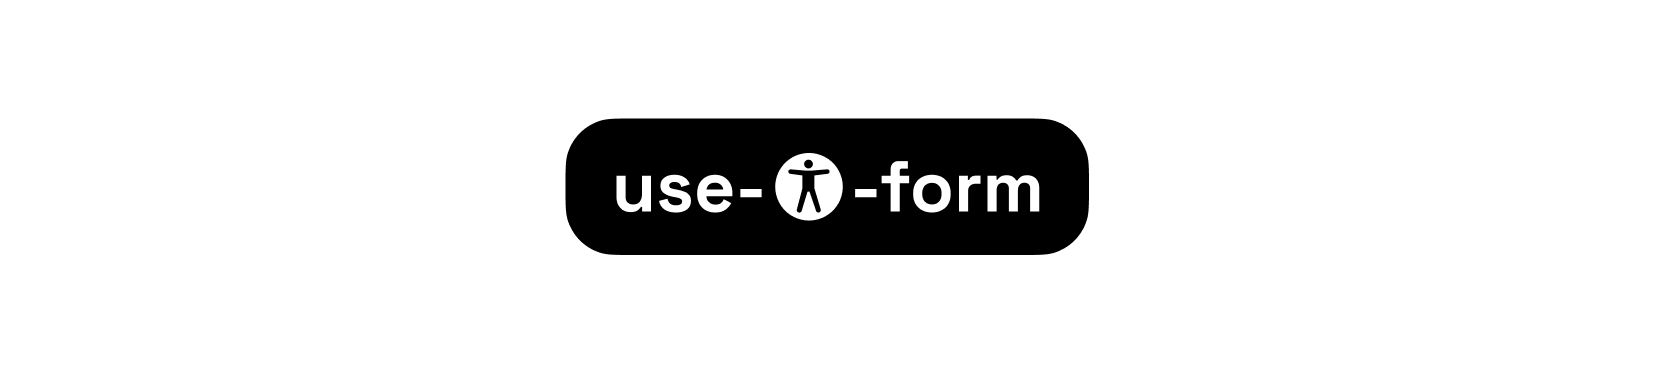 use-a11y-form Logo